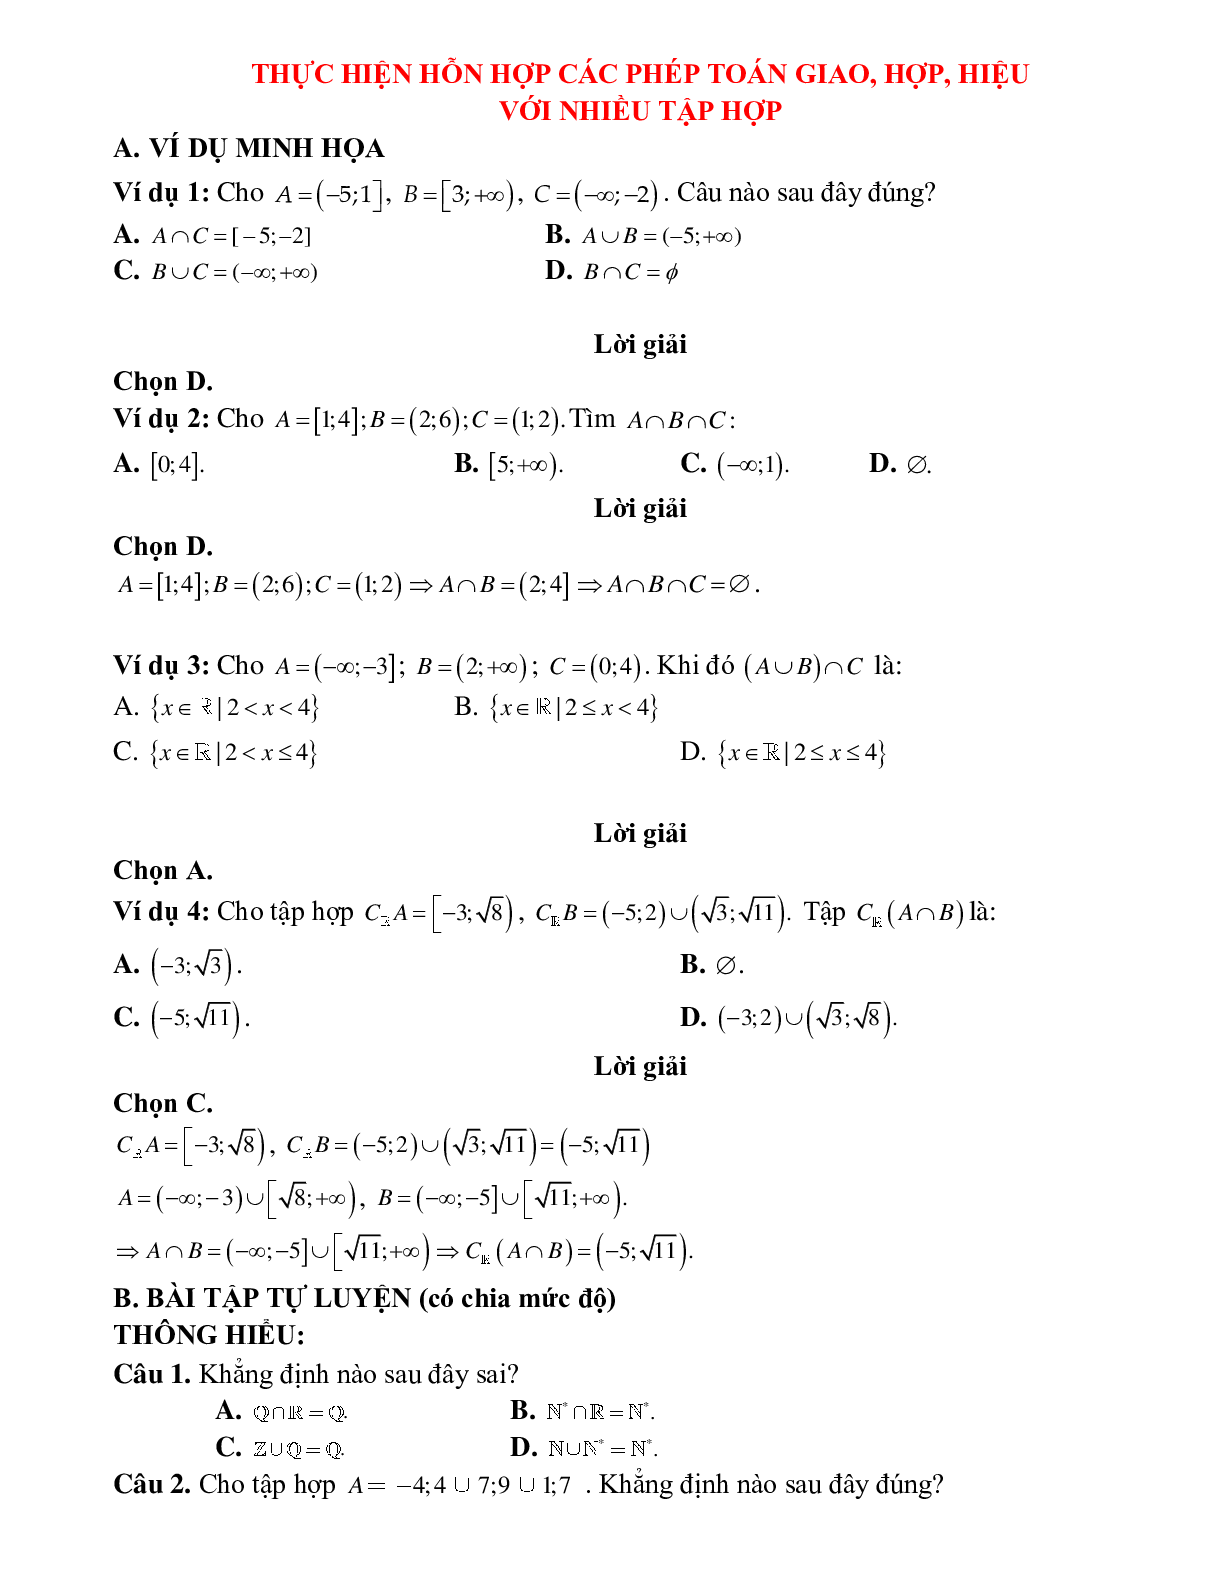 Bài tập tự luyện thực hiện hỗn hợp các phép toán với nhiều tập hợp Toán 10 (trang 1)